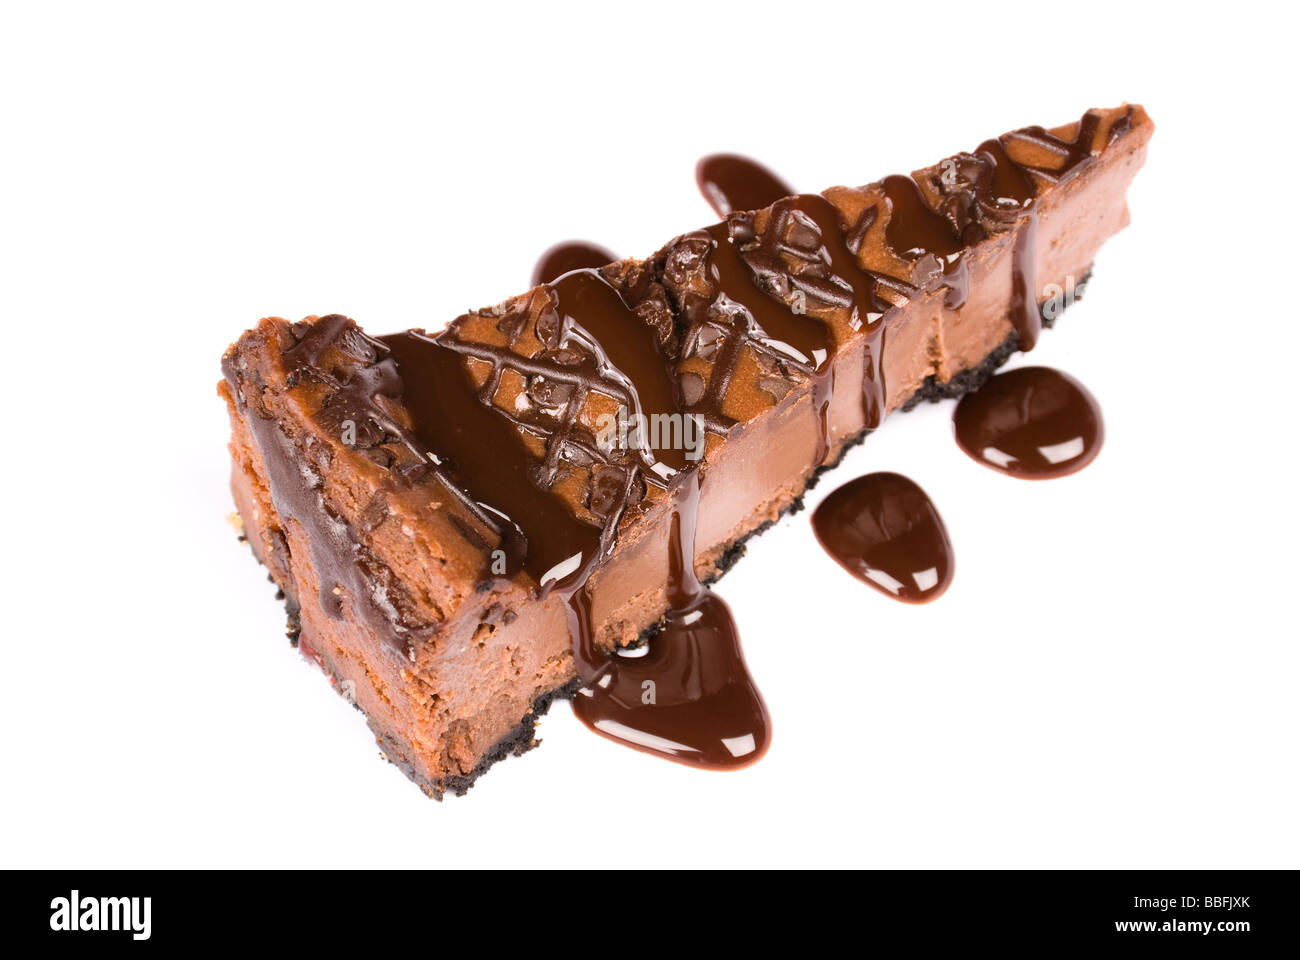 Ein Stück vom süßen Schokoladen-Käsekuchen mit Schokolade Sirup isoliert auf weiss Stockfoto